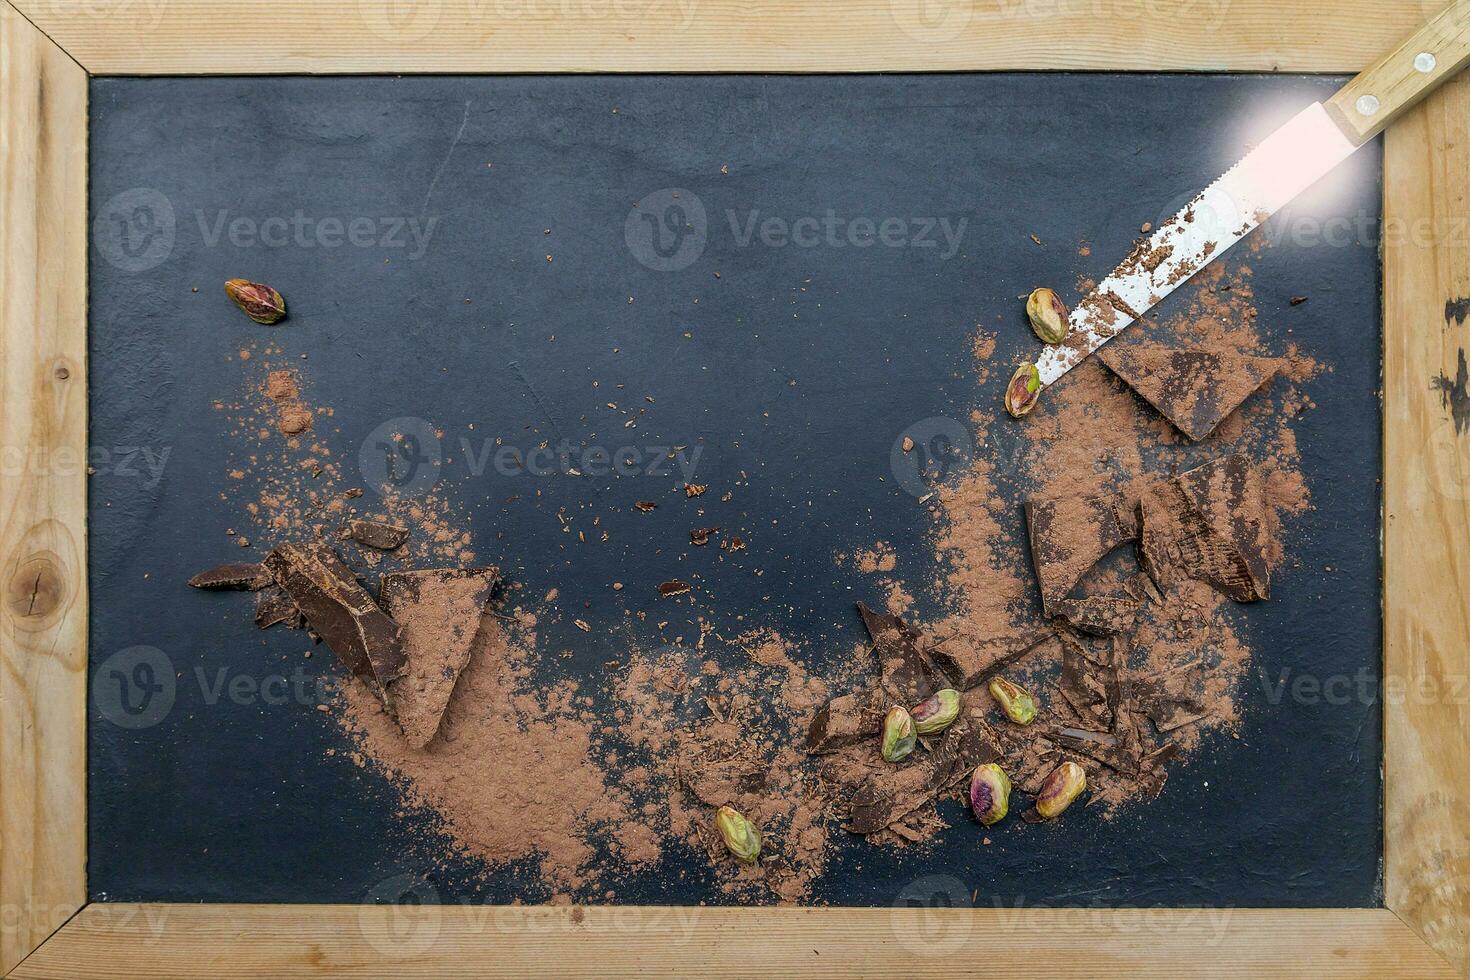 dunkel Schokolade Stücke gemischt mit Kakao Pulver foto